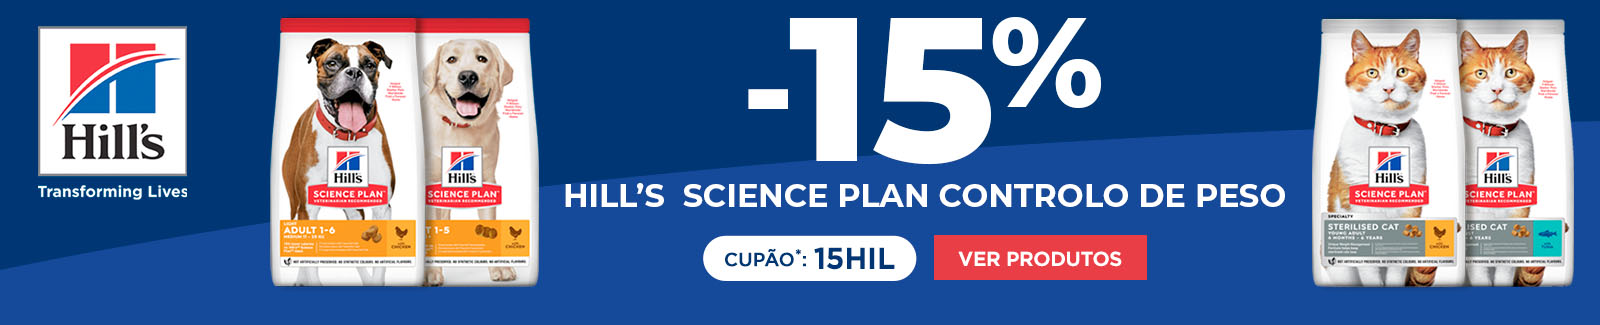 -15% em Hill's Science Plan controlo de peso com o cupão 15HIL